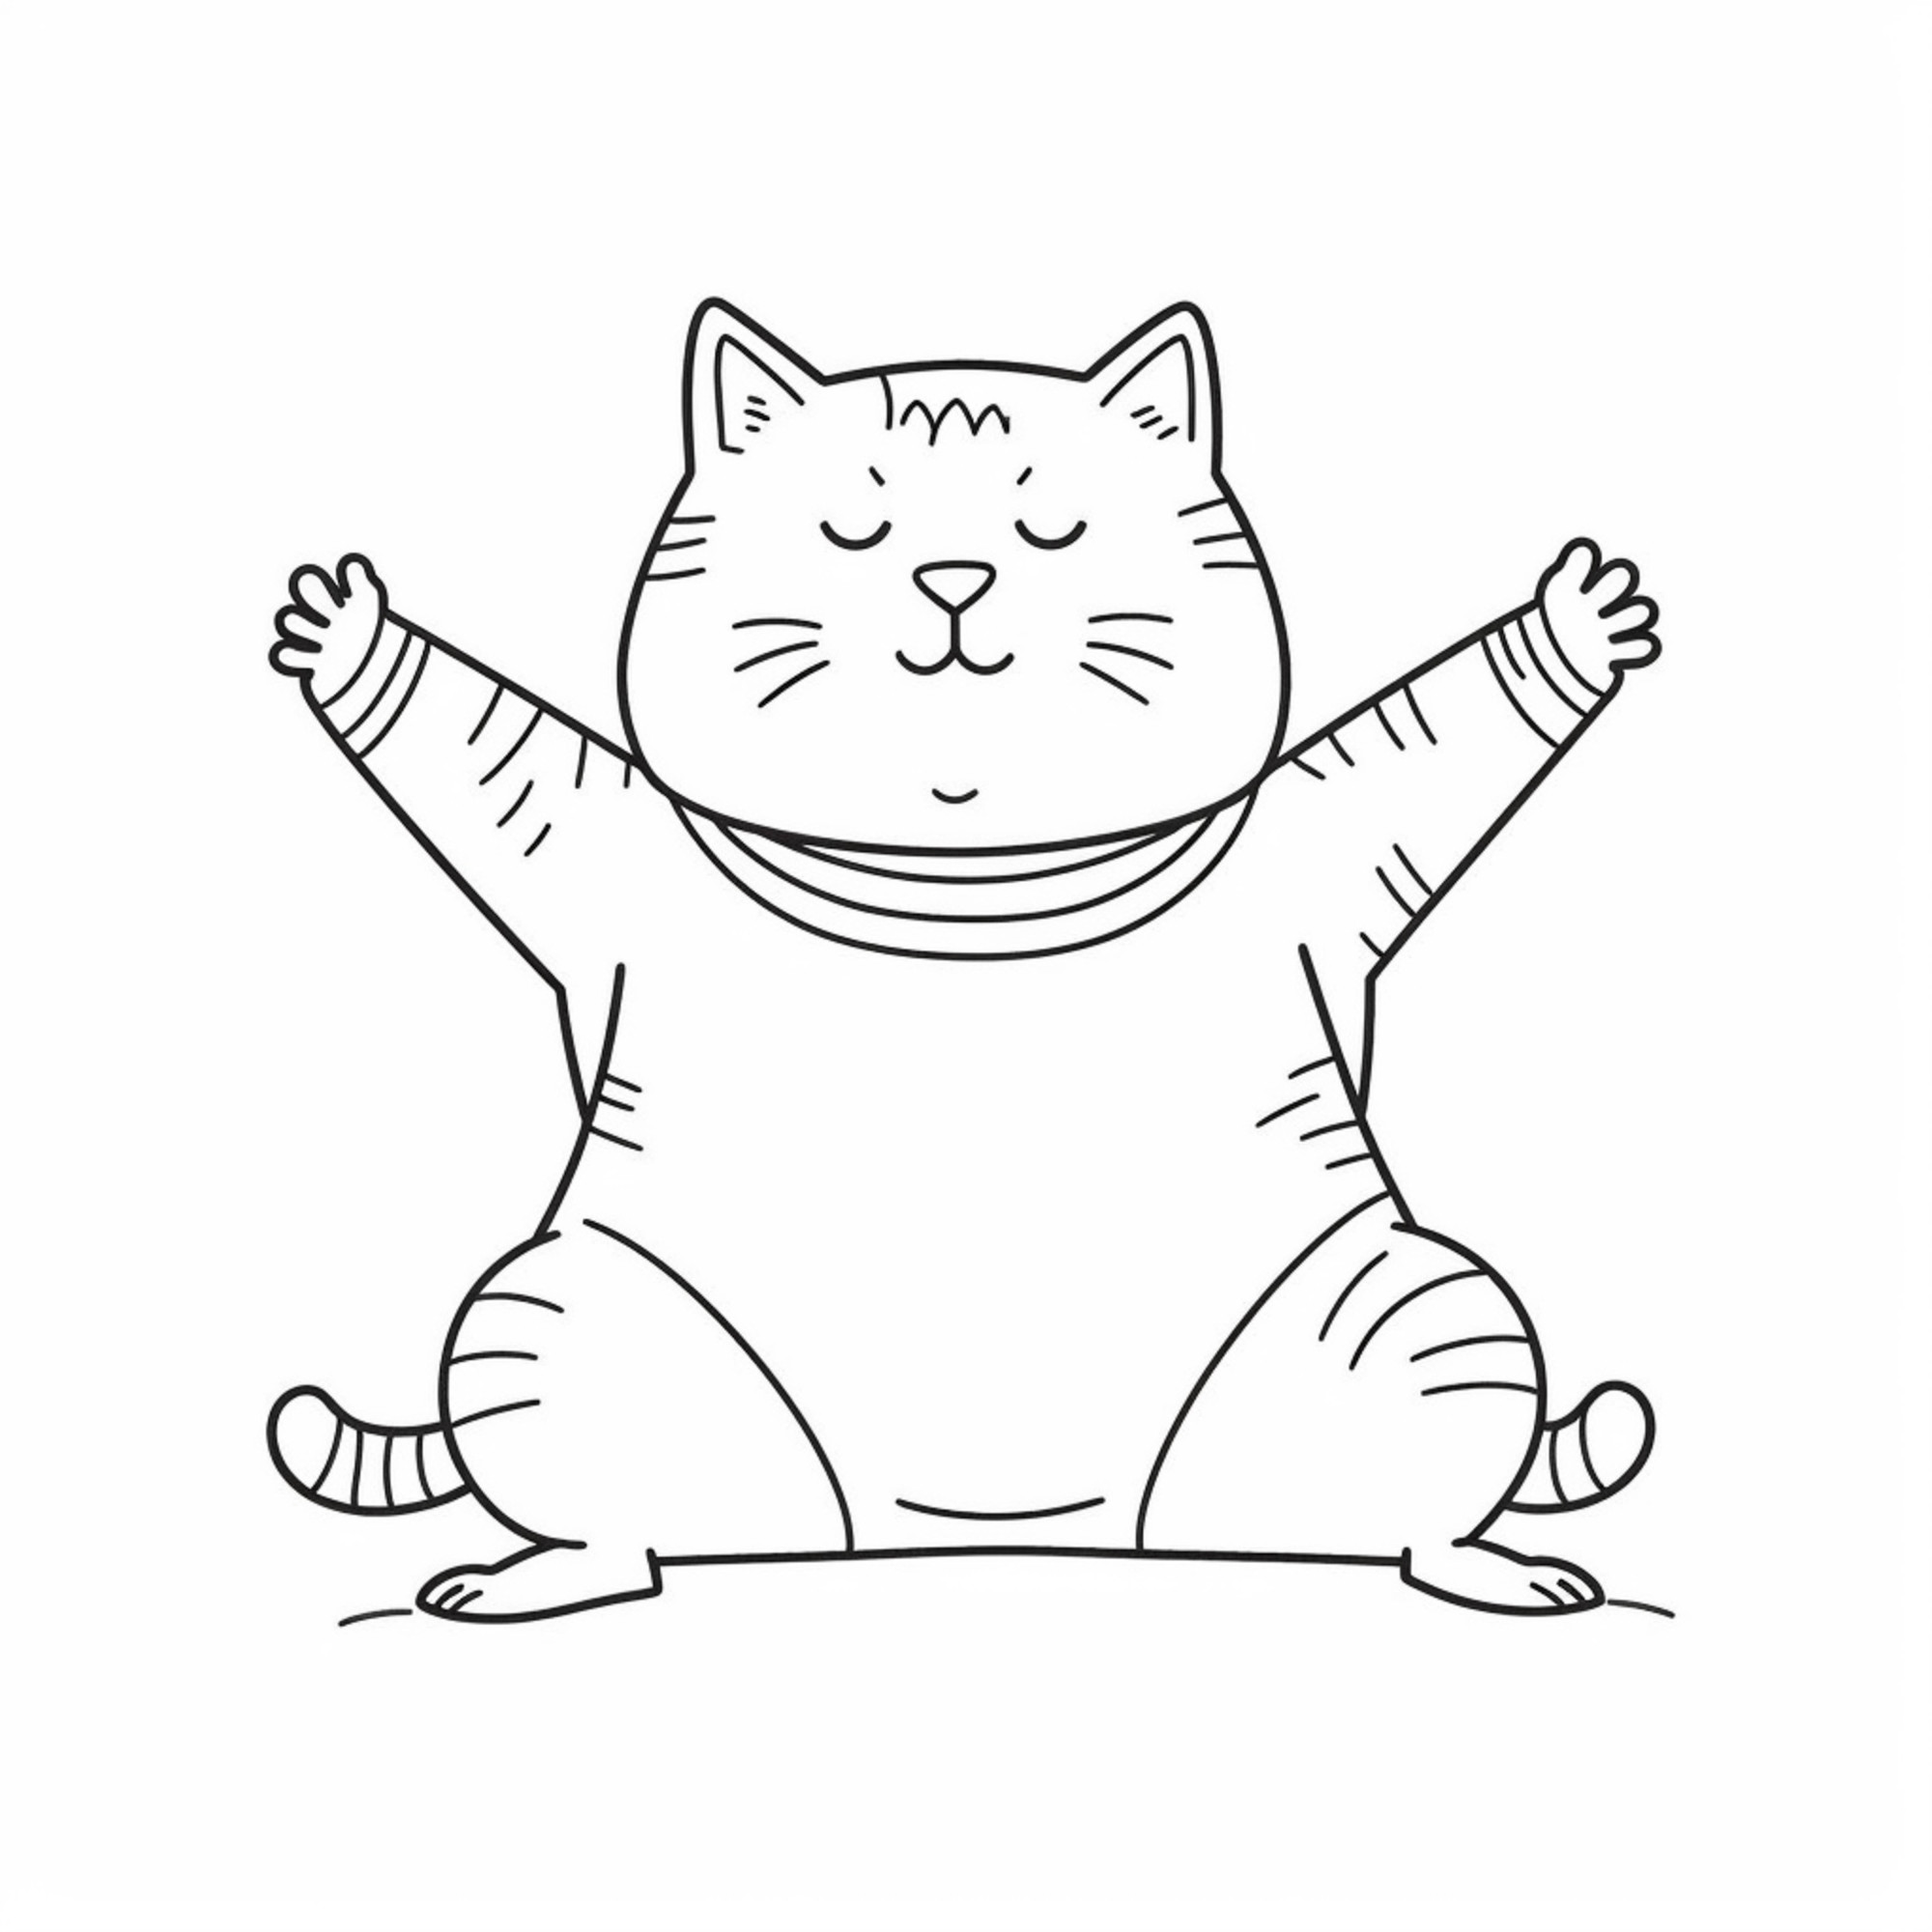 Раскраска для детей: толстый кот сидит с поднятыми лапами